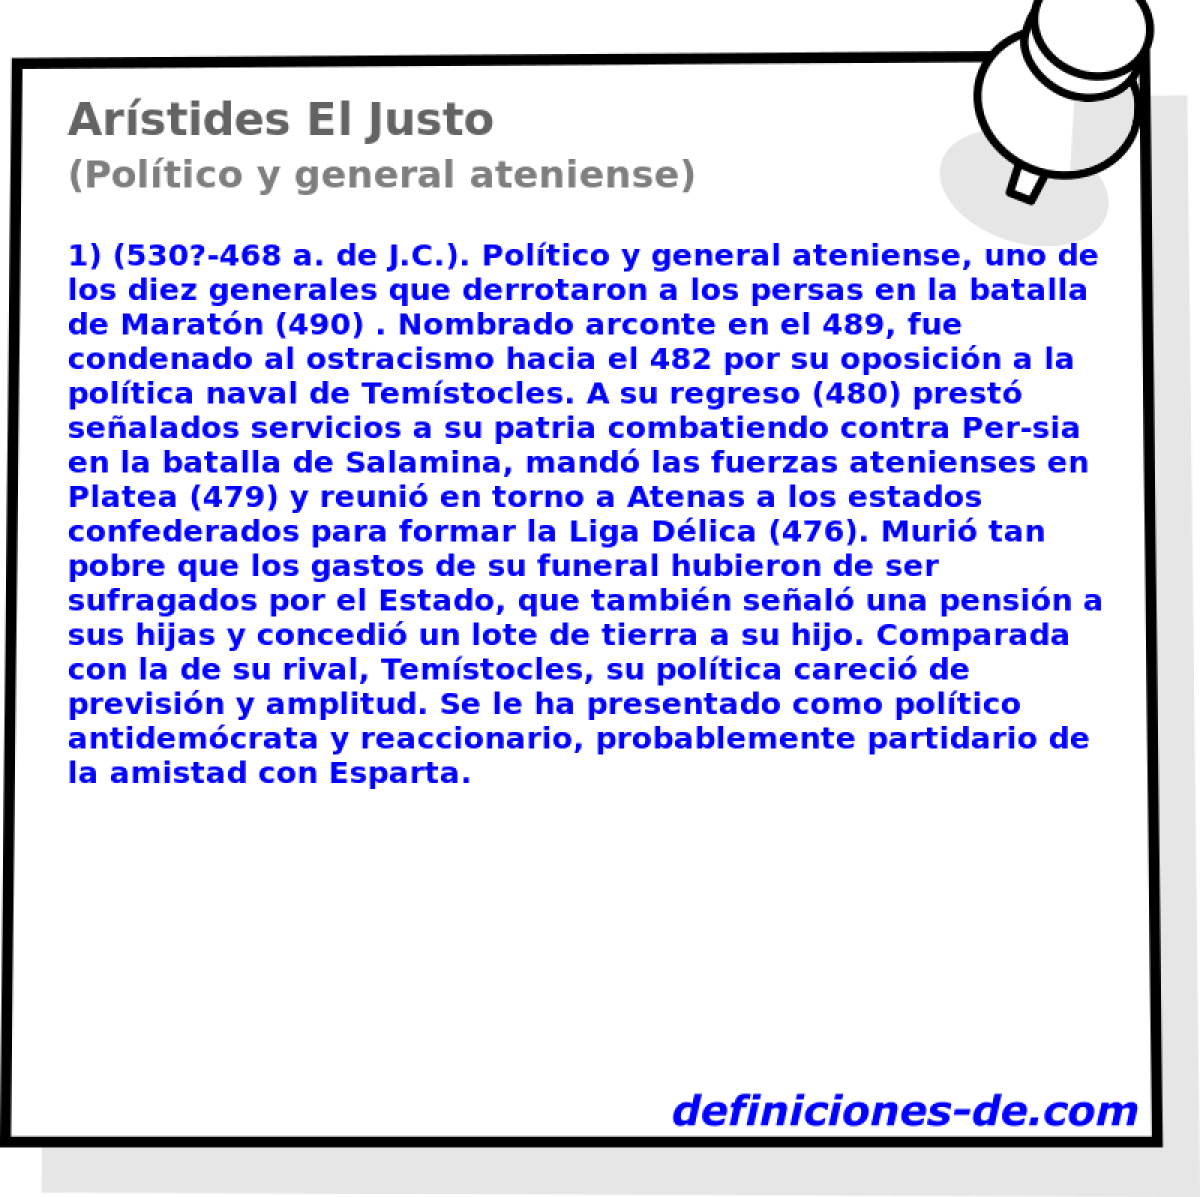 Arstides El Justo (Poltico y general ateniense)